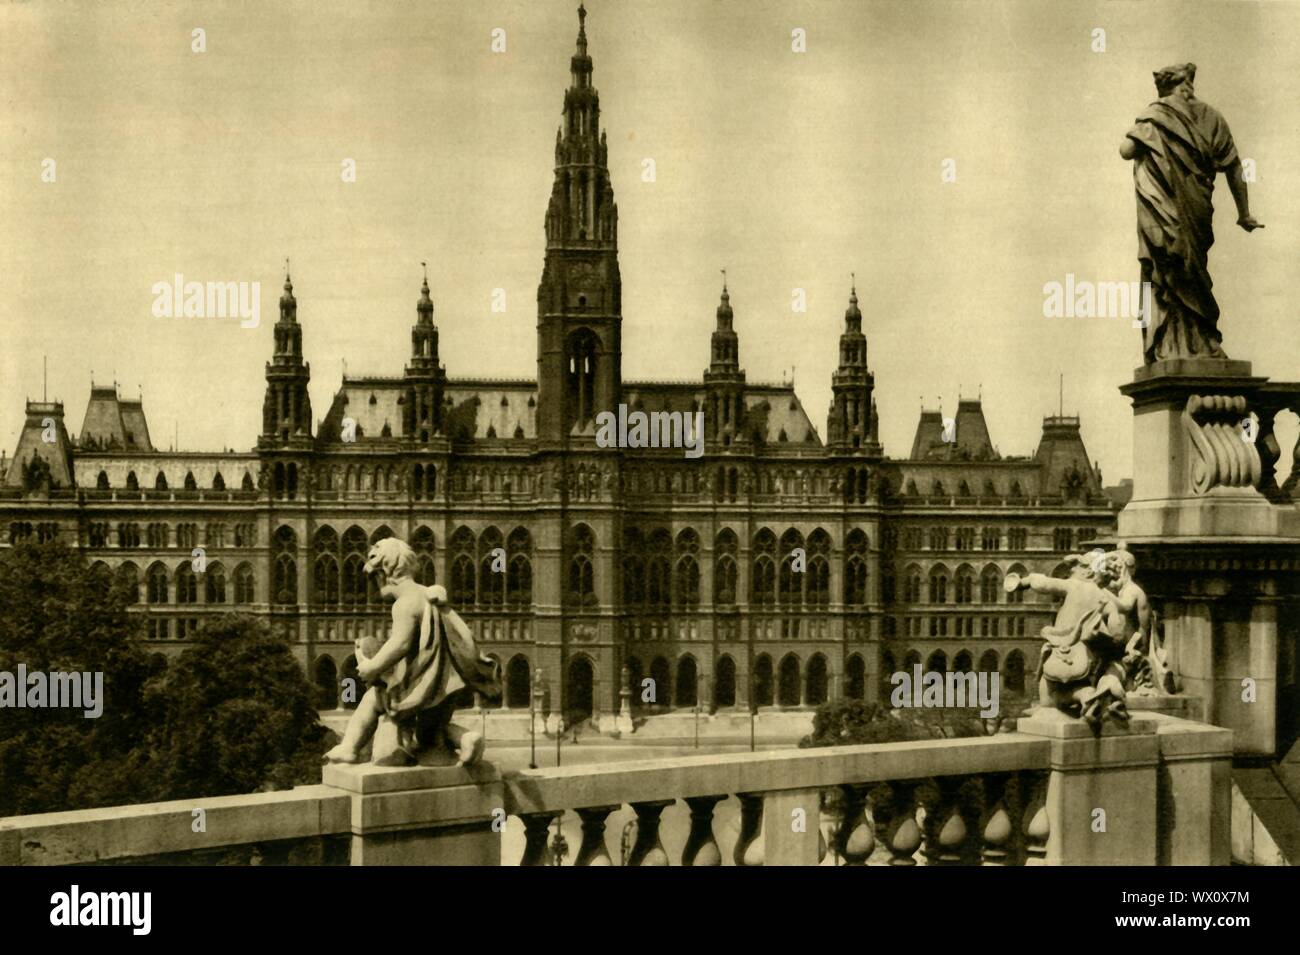 The Town Hall, Vienna, Austria, c1935. The Vienna City Hall (Wiener Rathaus), was designed by Friedrich von Schmidt and built 1872-1883 in Neo-Gothic style. From &quot;&#xd6;sterreich - Land Und Volk&quot;, (Austria, Land and People). [R. Lechner (Wilhelm M&#xfc;ller), Vienna, c1935] Stock Photo